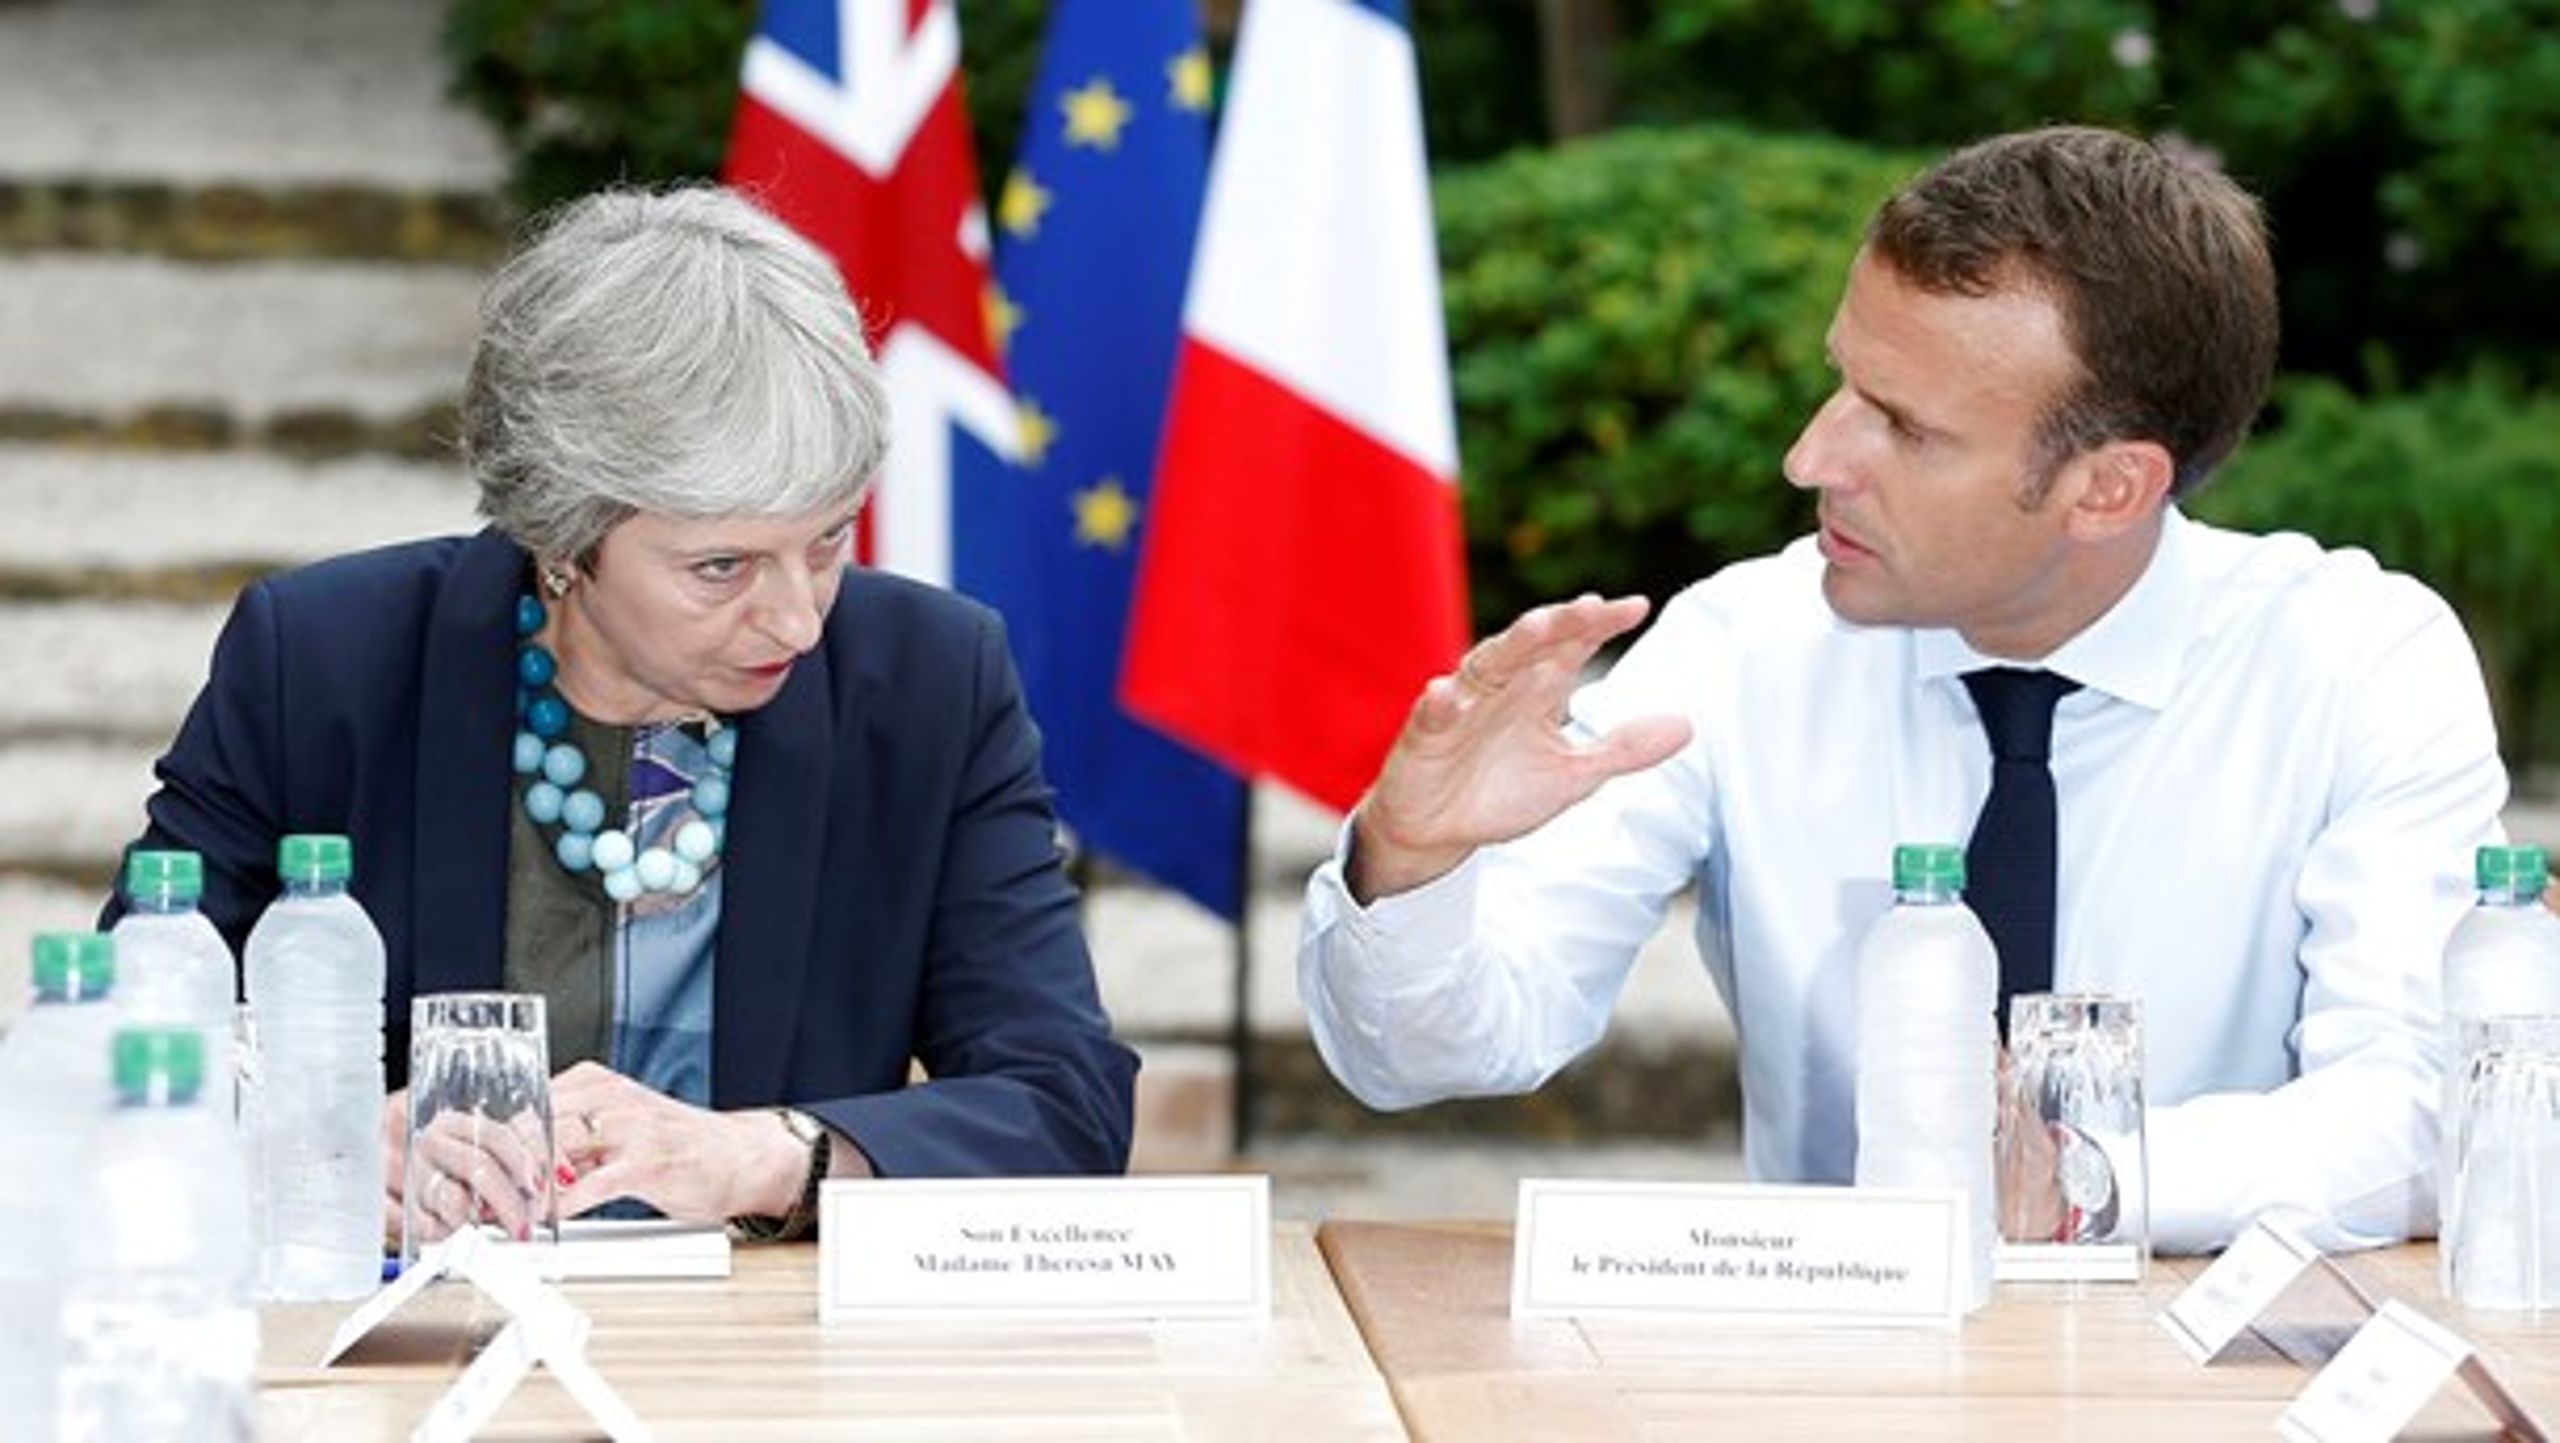 Den britiske premierminister, Theresa May (t.v.), fik ikke overbevist Frankrigs præsident, Emmanuel Macron, om sine Brexit-planer, da hun besøgte ham i begyndelsen af august.